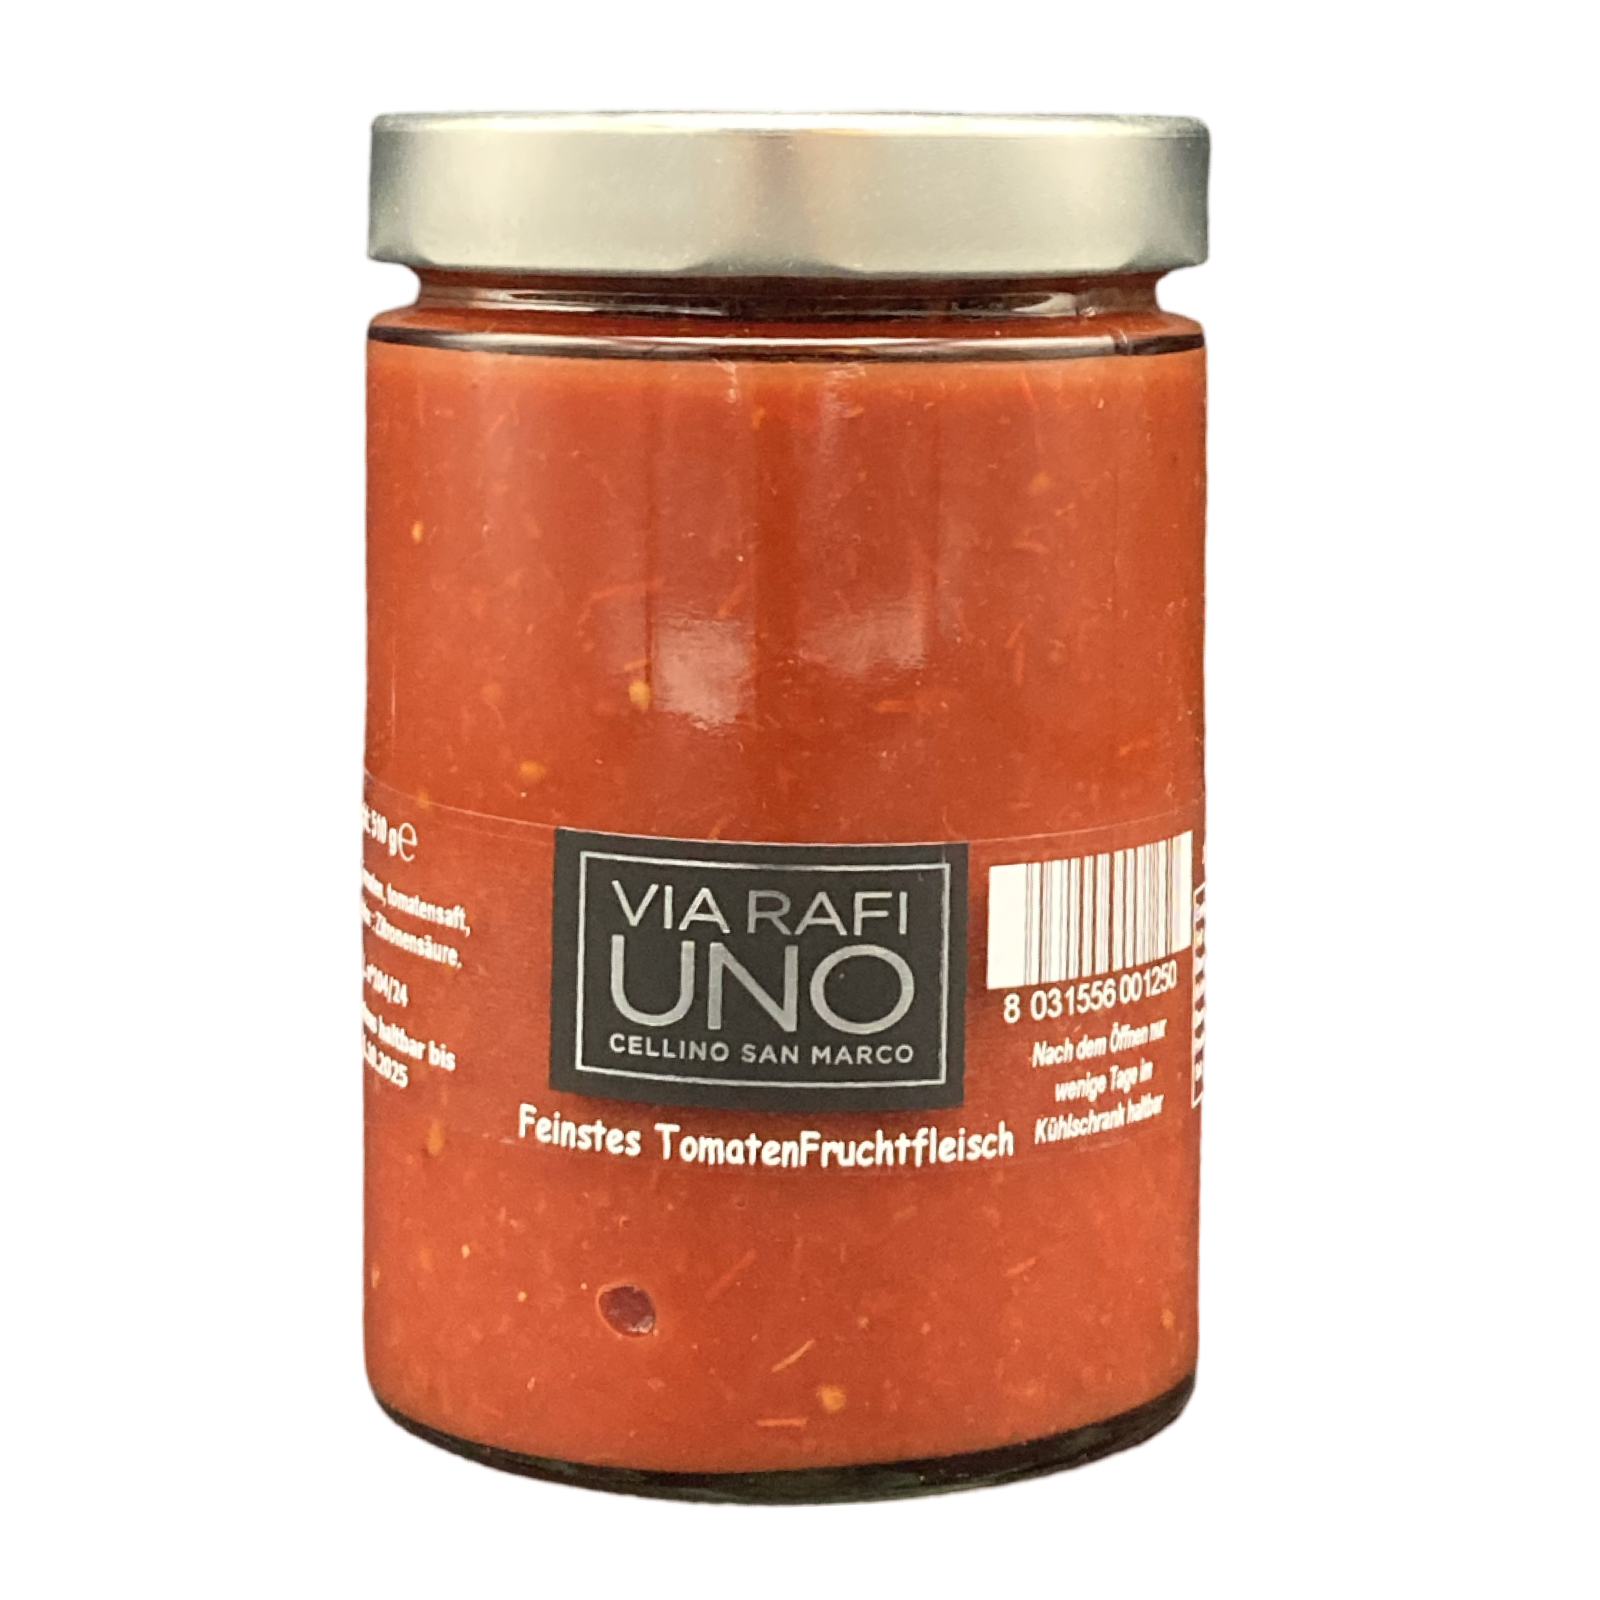 Feinstes Tomatenfruchtfleisch Via Rafi UNO 510g